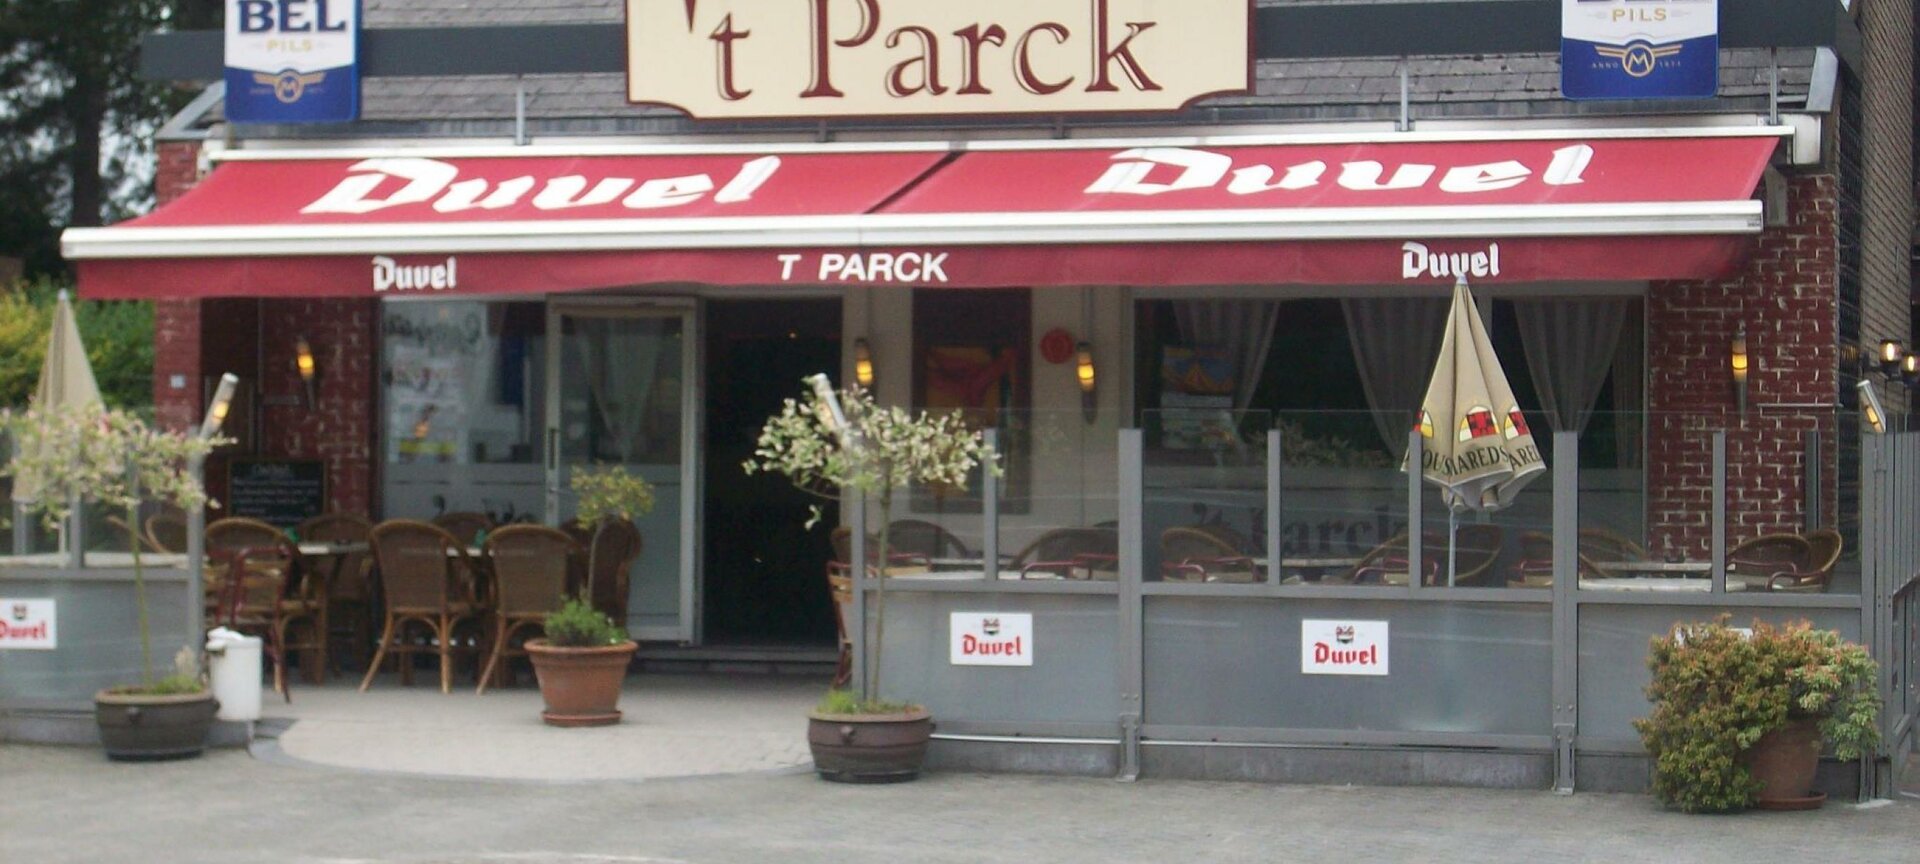 't Parck - parck1